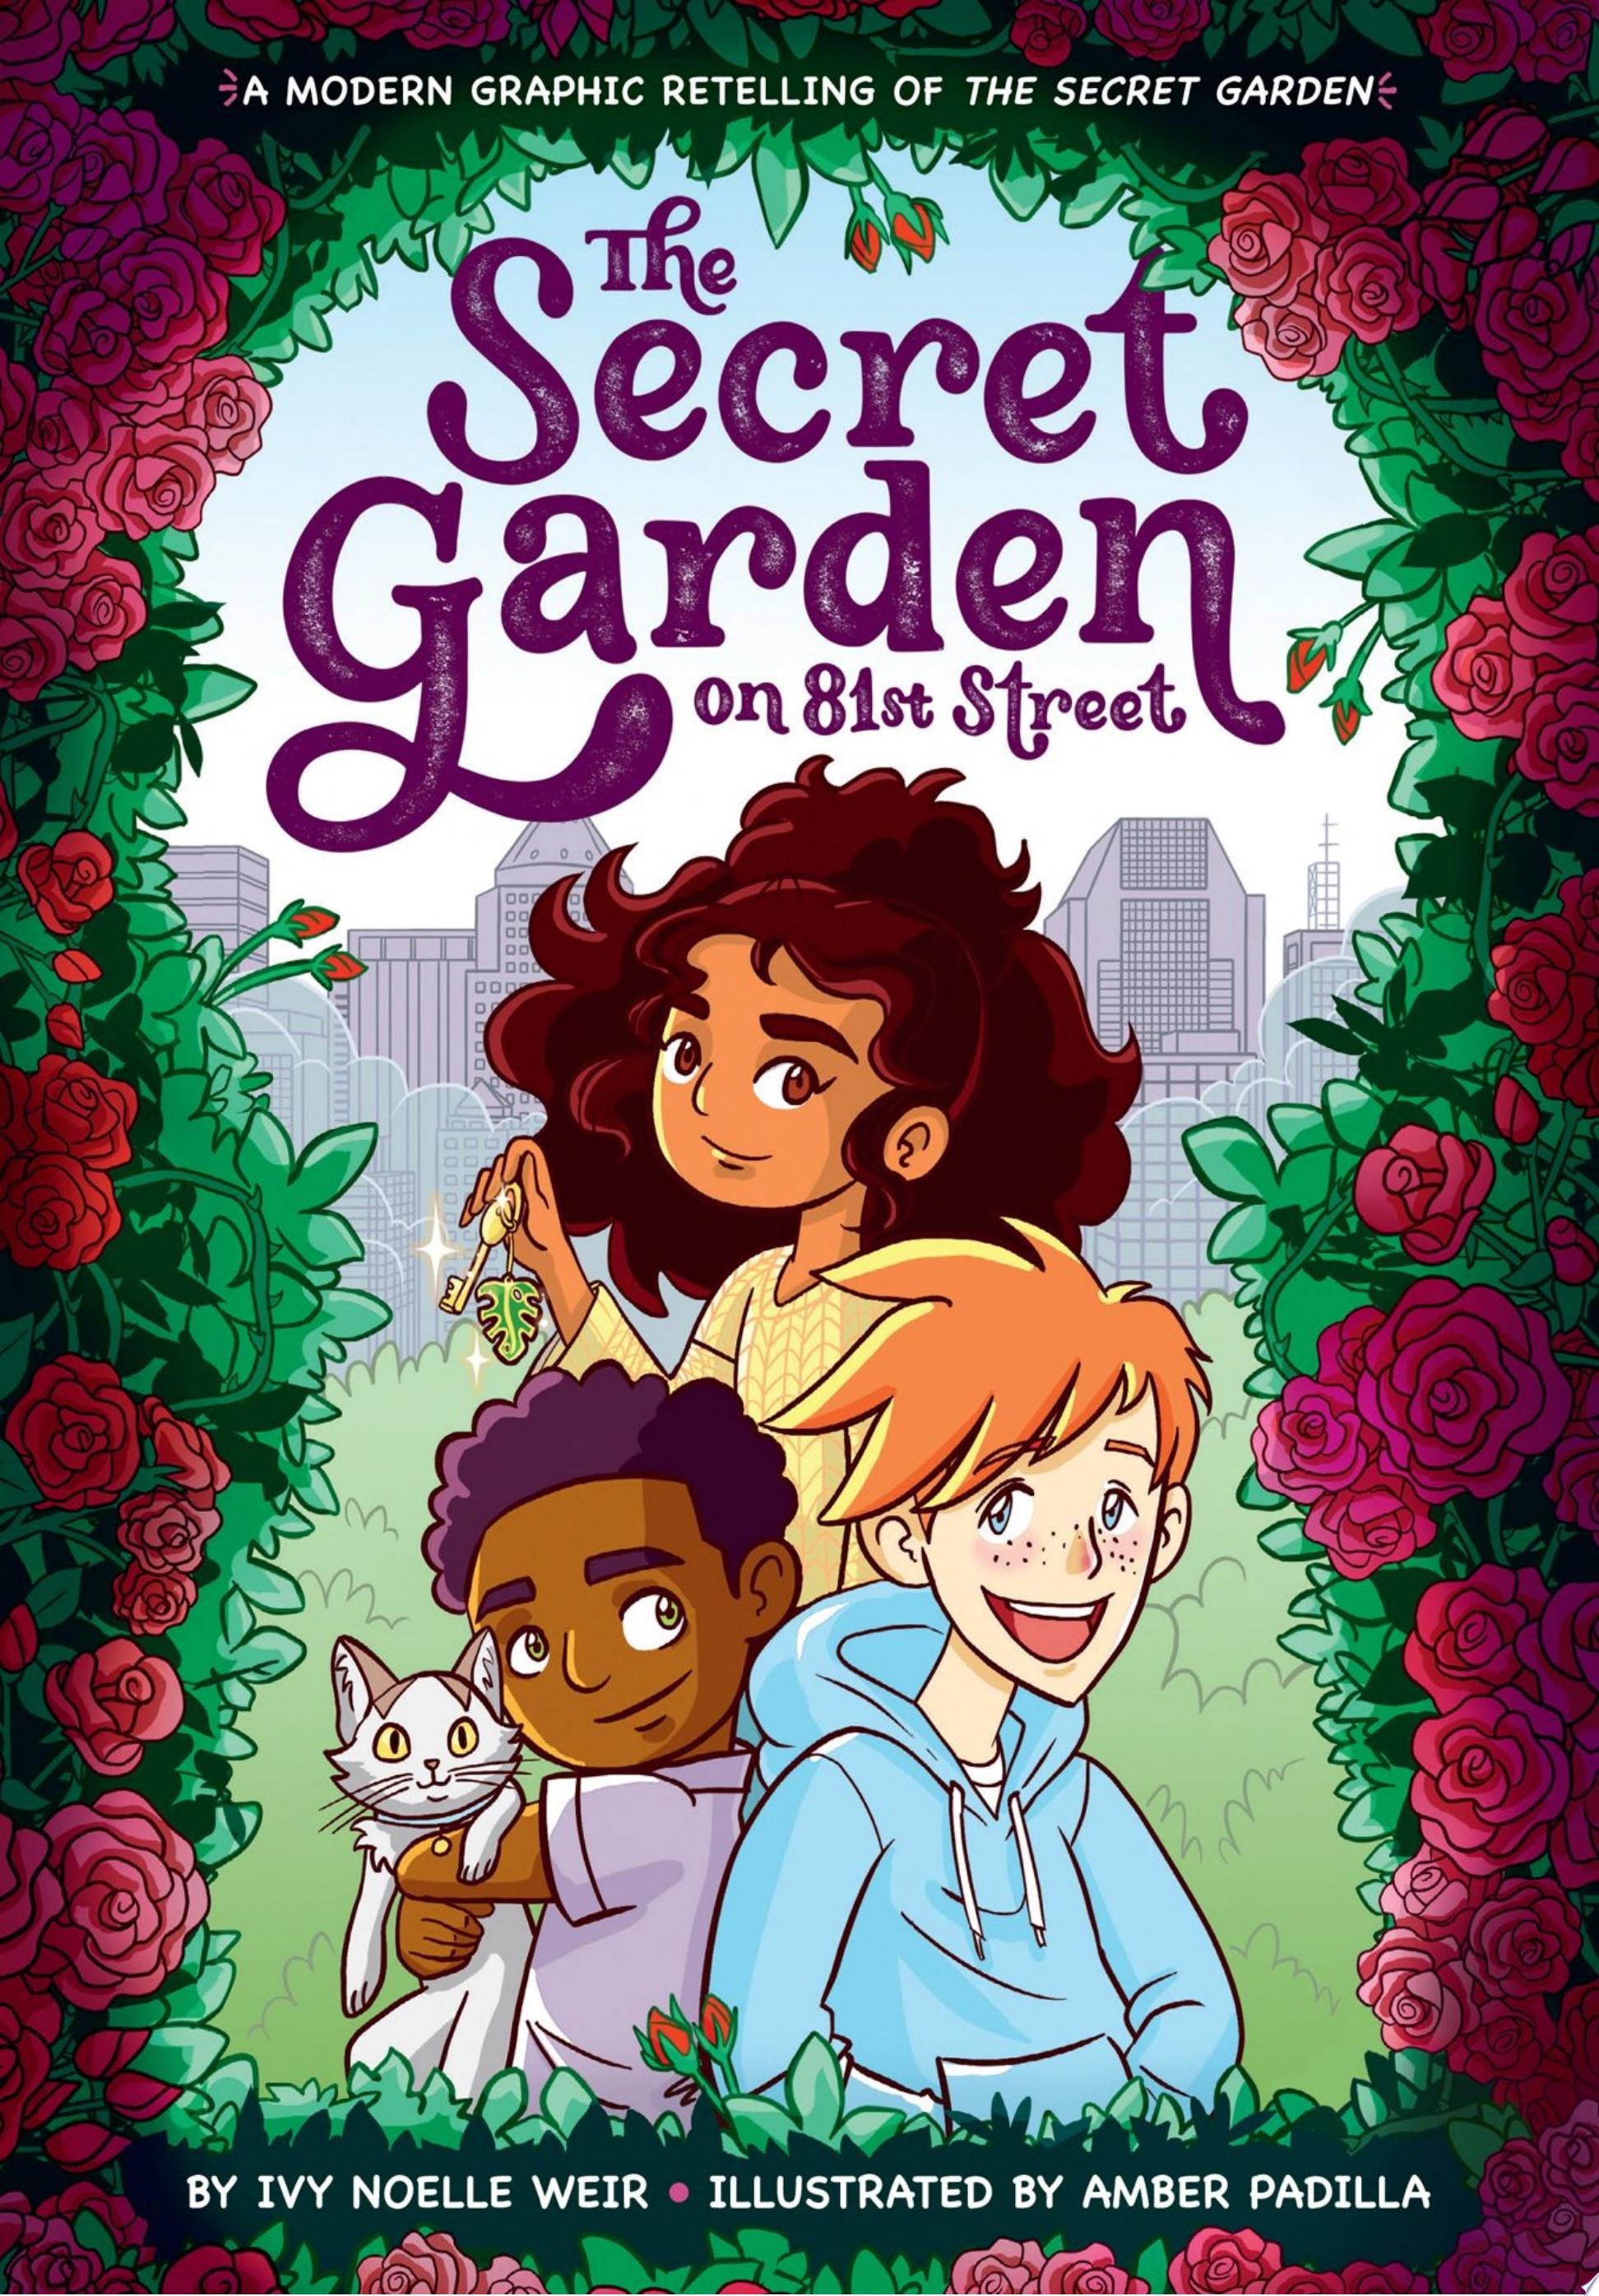 Image for "The Secret Garden on 81st Street"